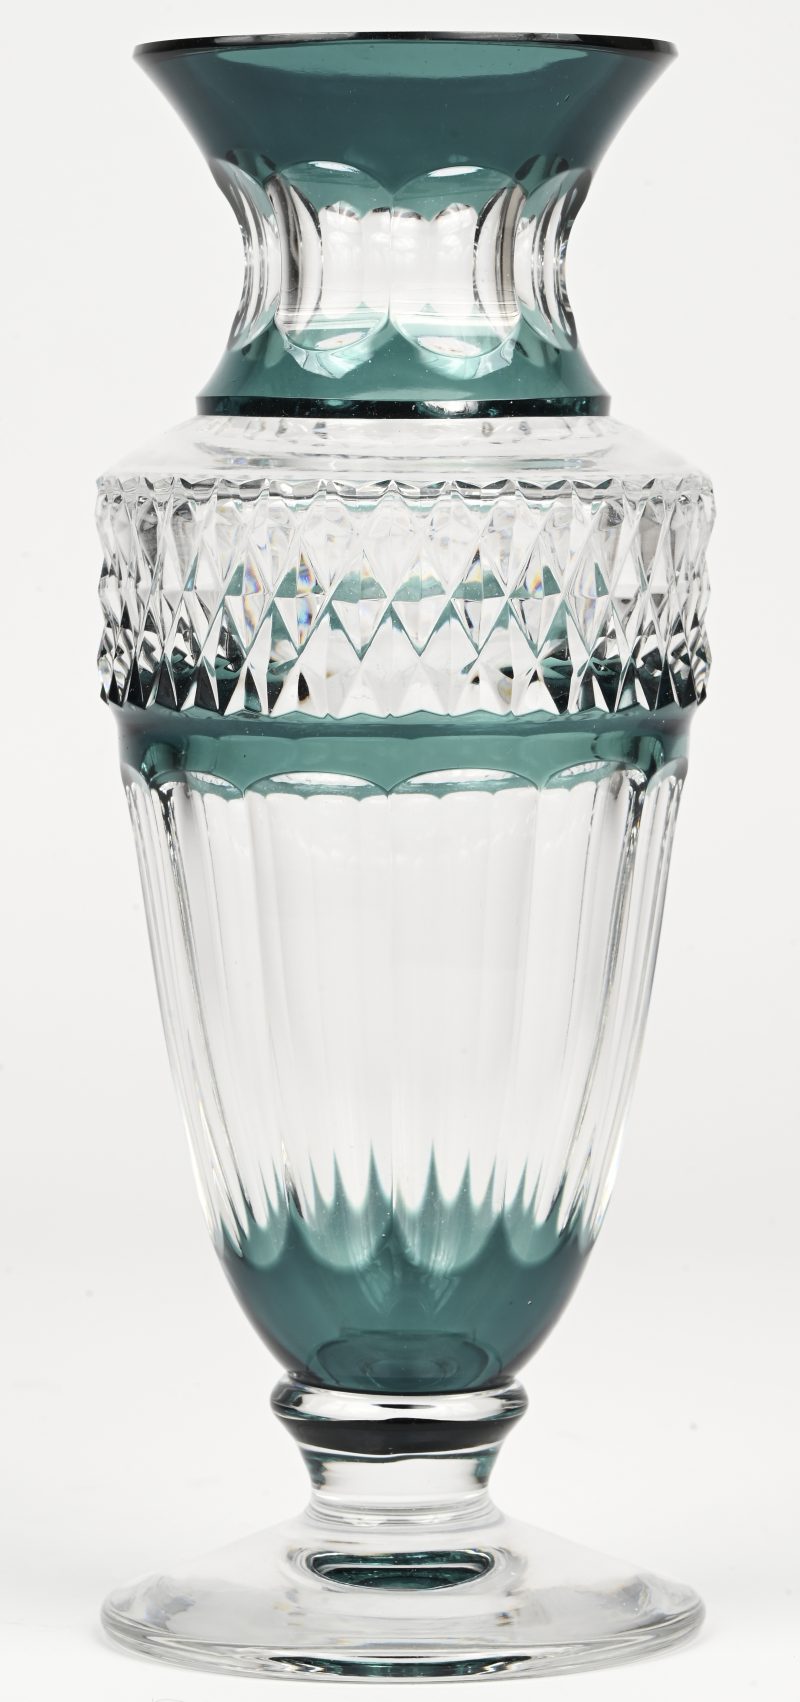 Een kristallen vaas, kleurloos en groen, getekend Val Saint Lambert.